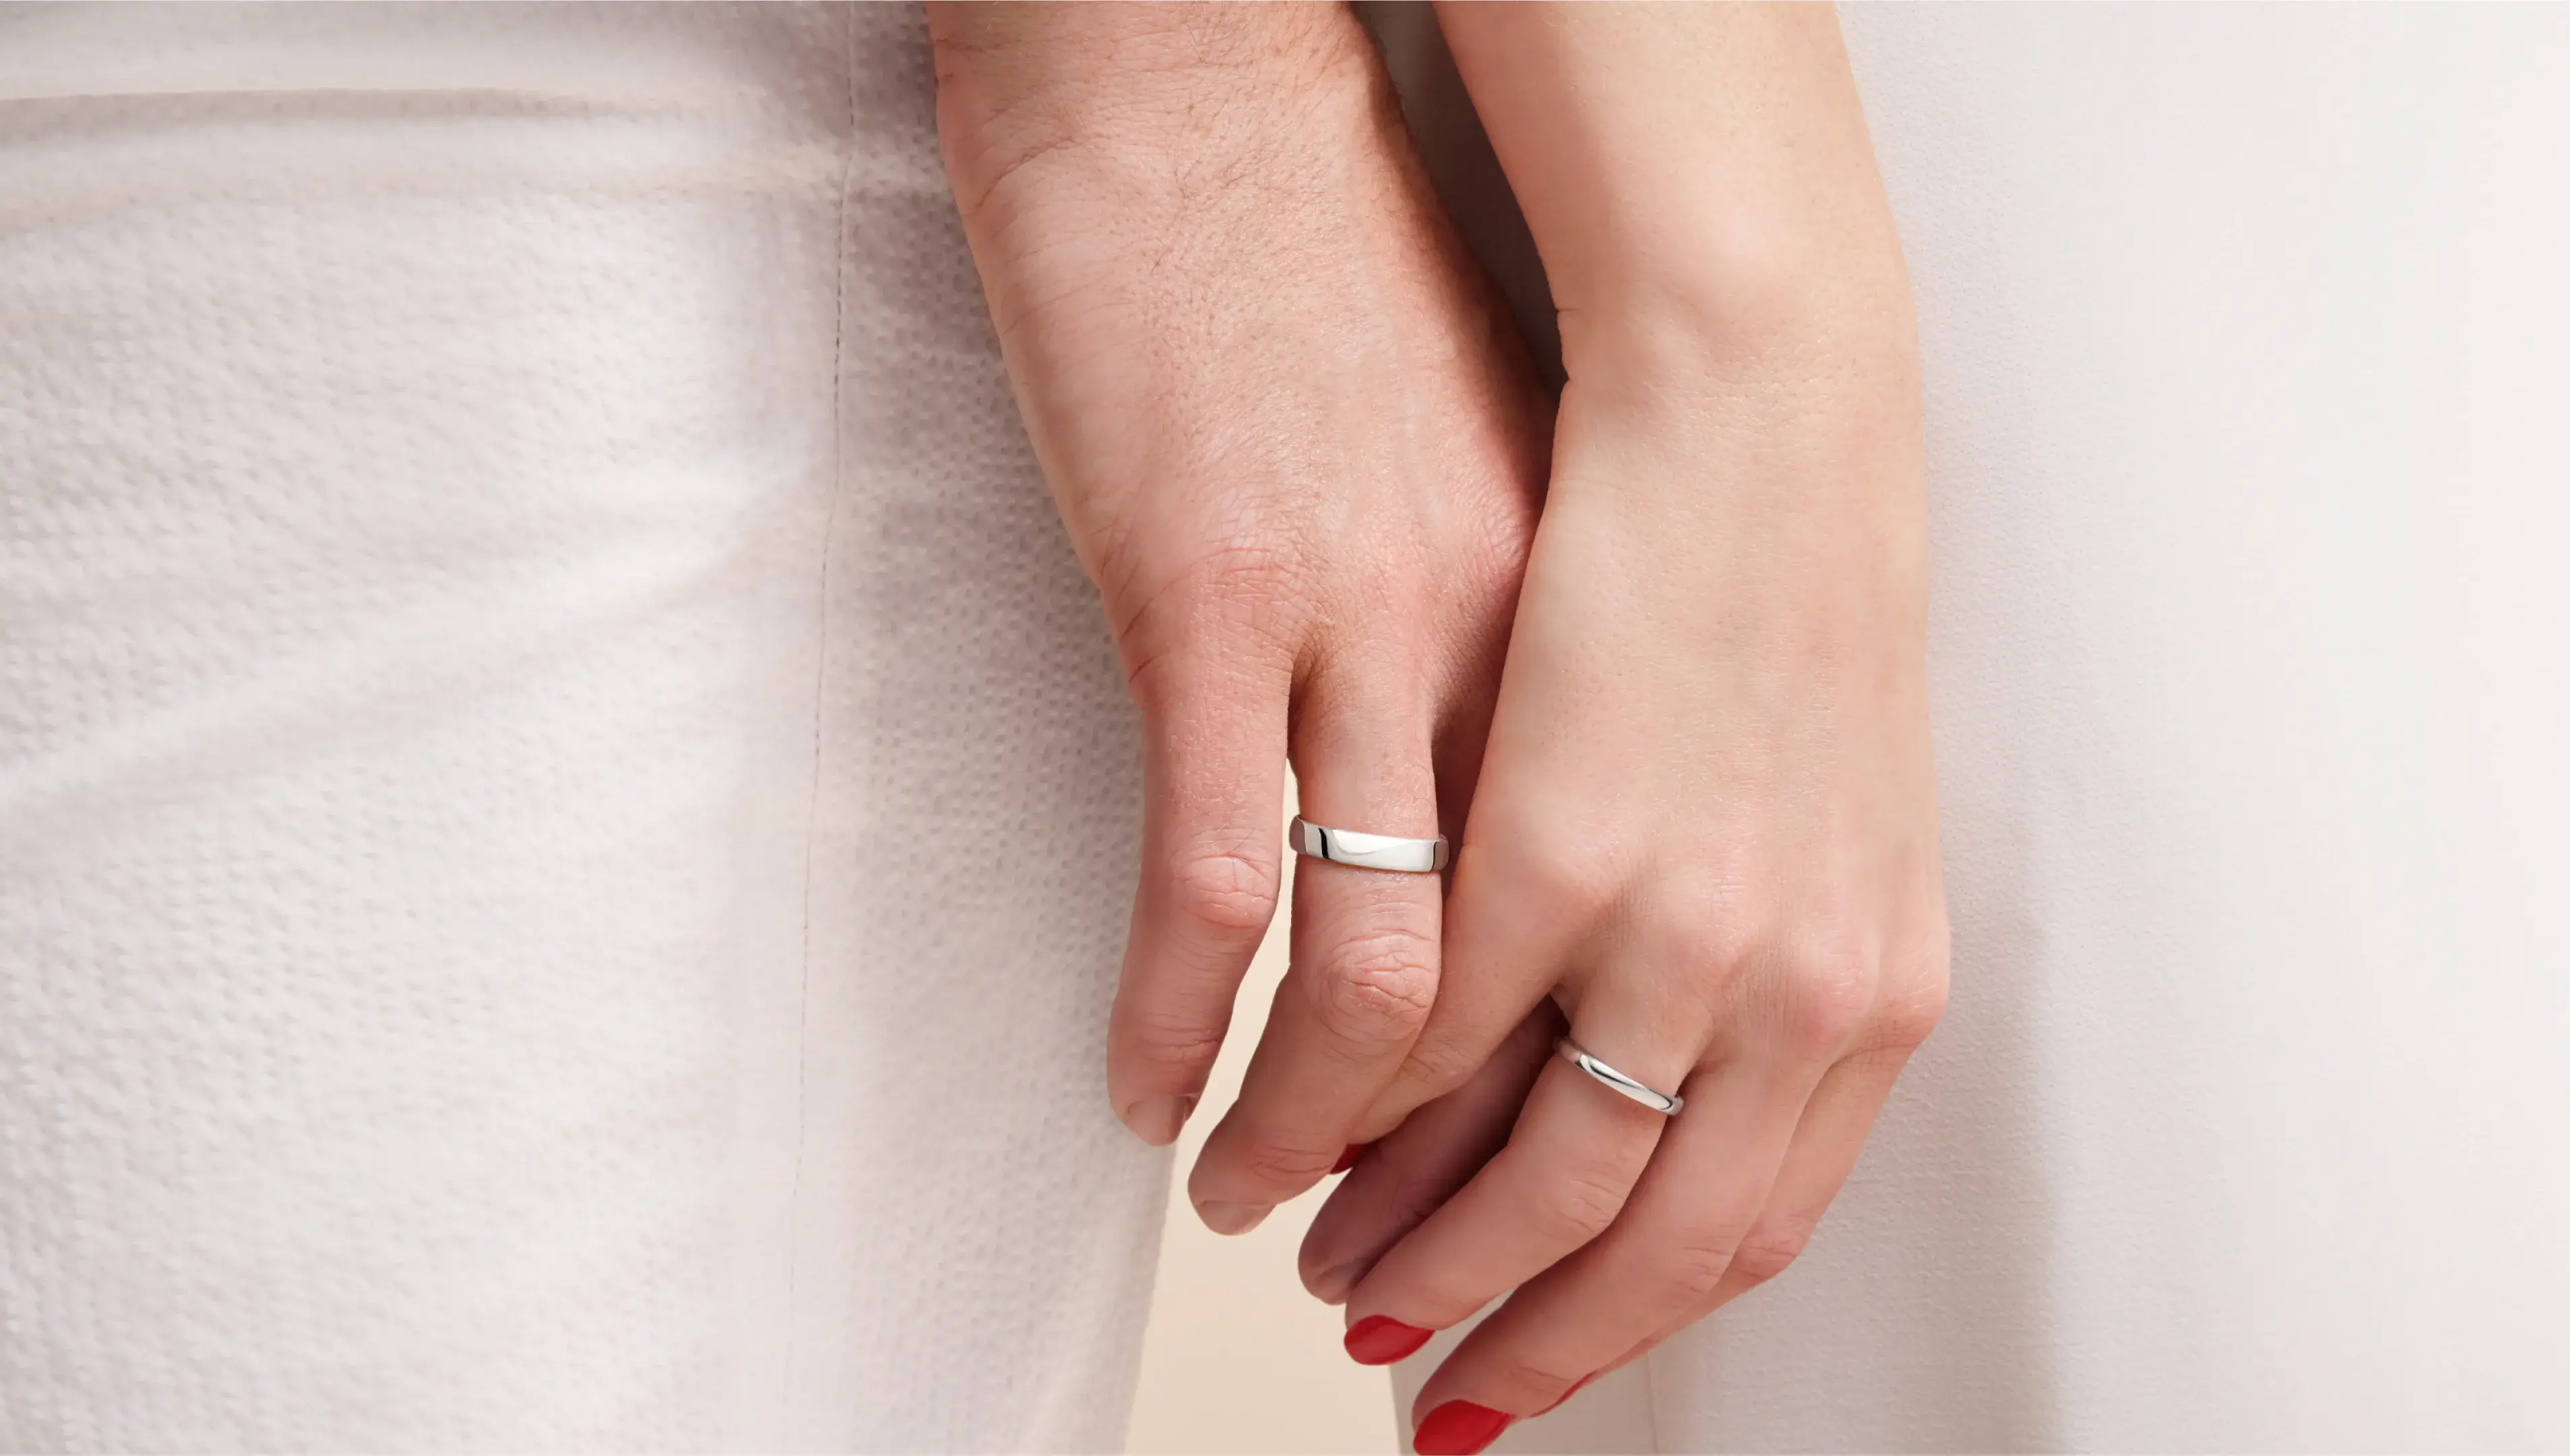 Zwei Hände in Nahaufnahme mit silbernen Eheringen am Finger.